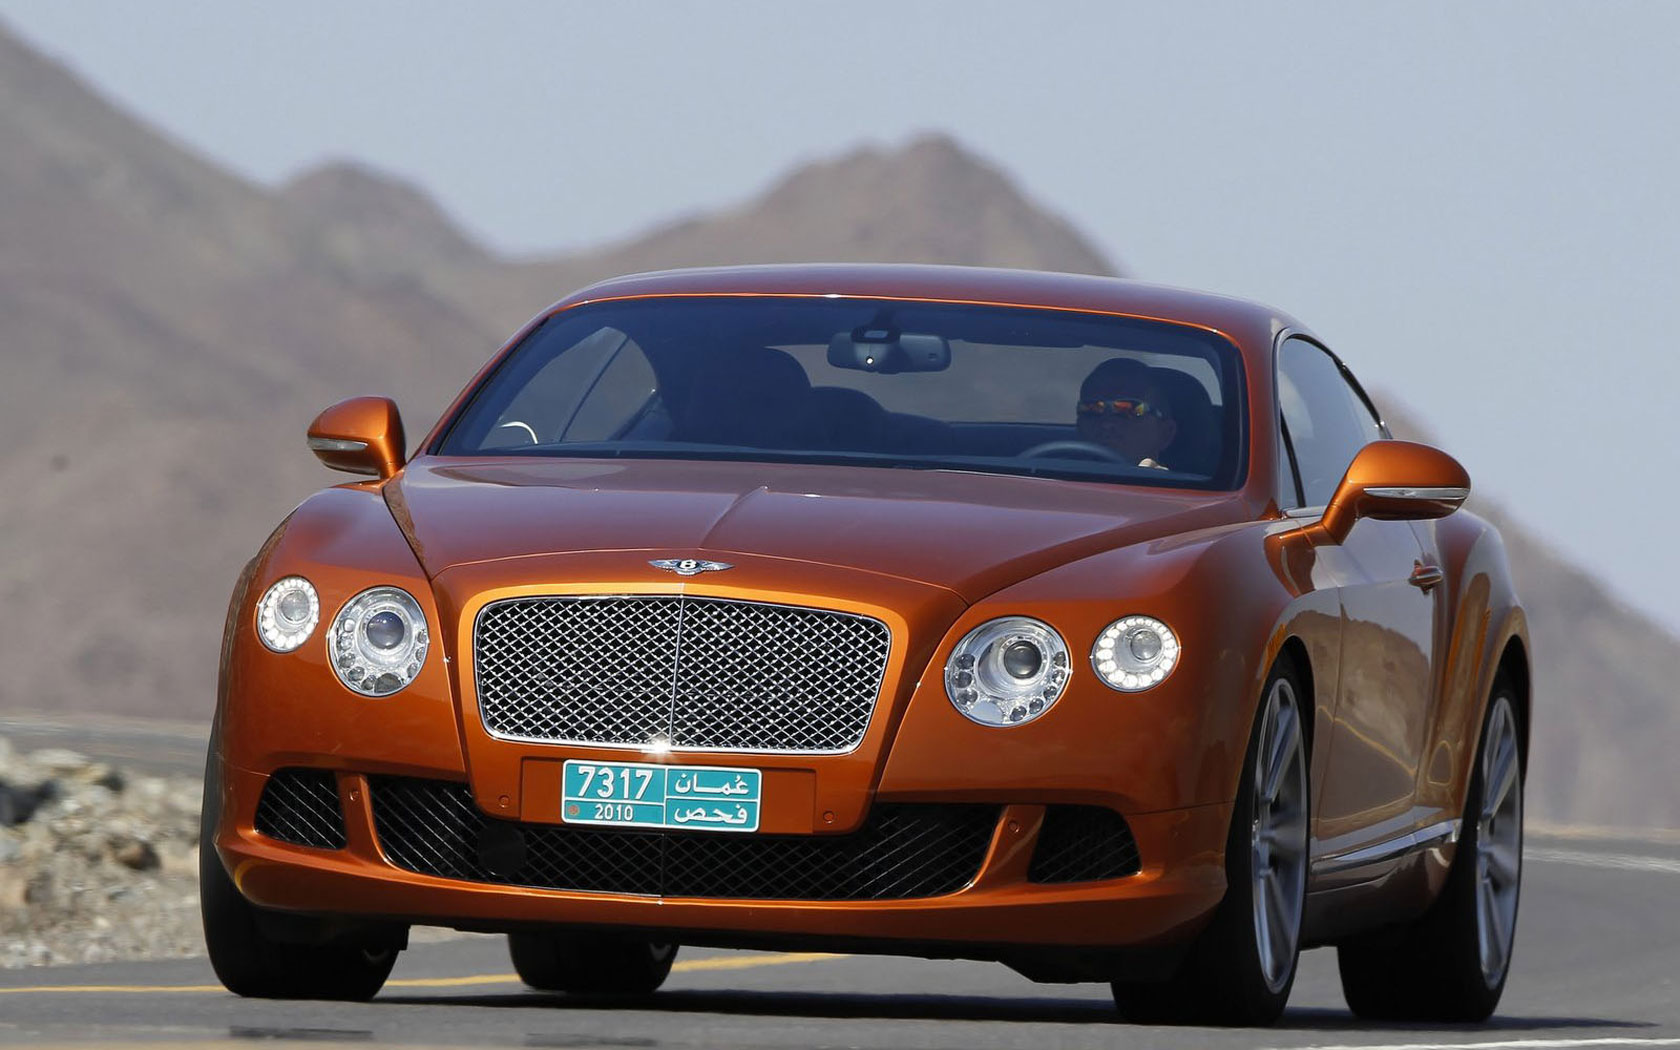 Bentley Continental gt 2010 Orange